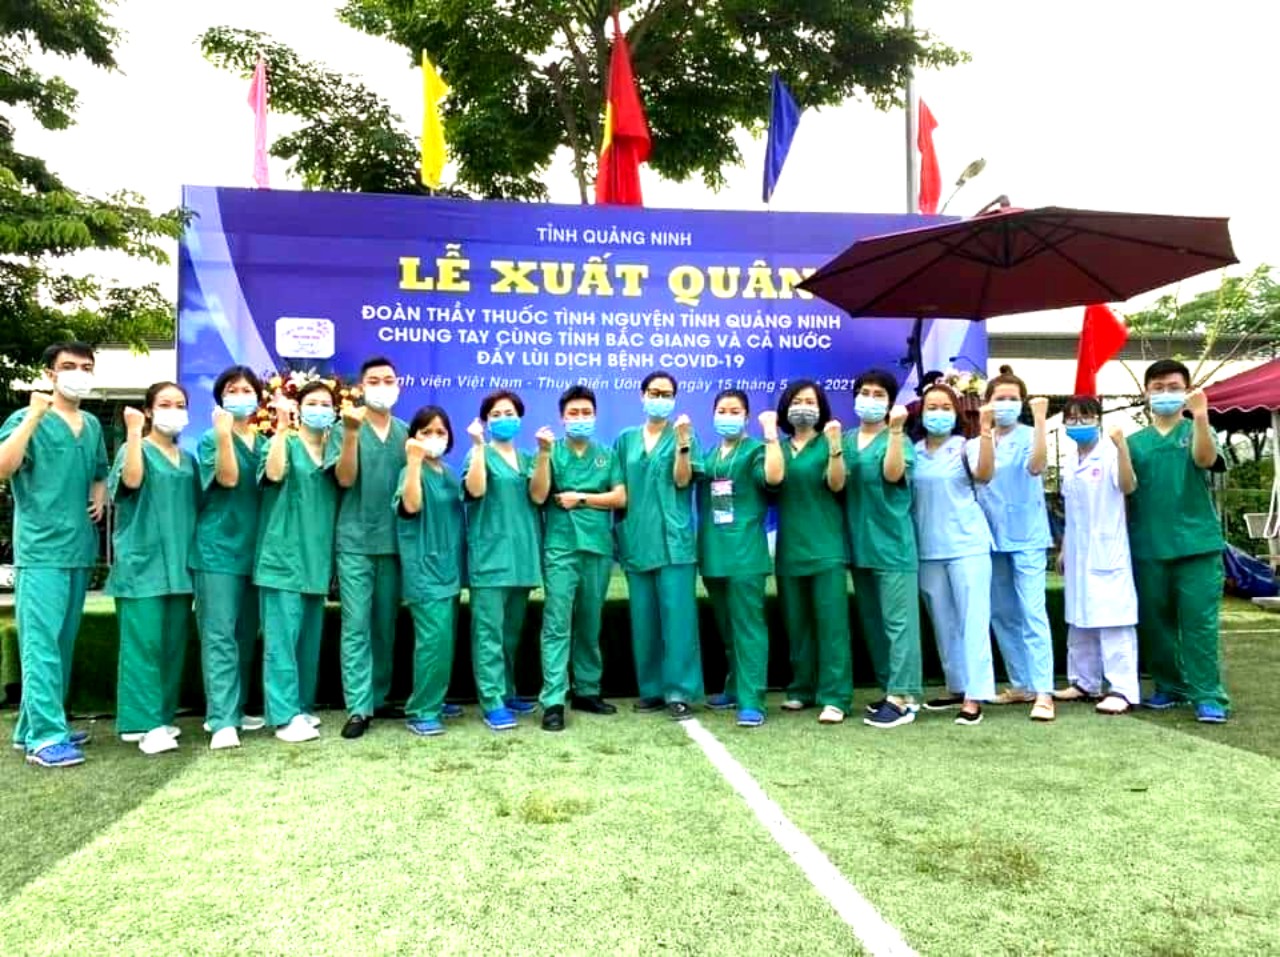 Quảng Ninh: Cử Đoàn Thầy thuốc tình nguyện lên đường hỗ trợ tỉnh Bắc Giang